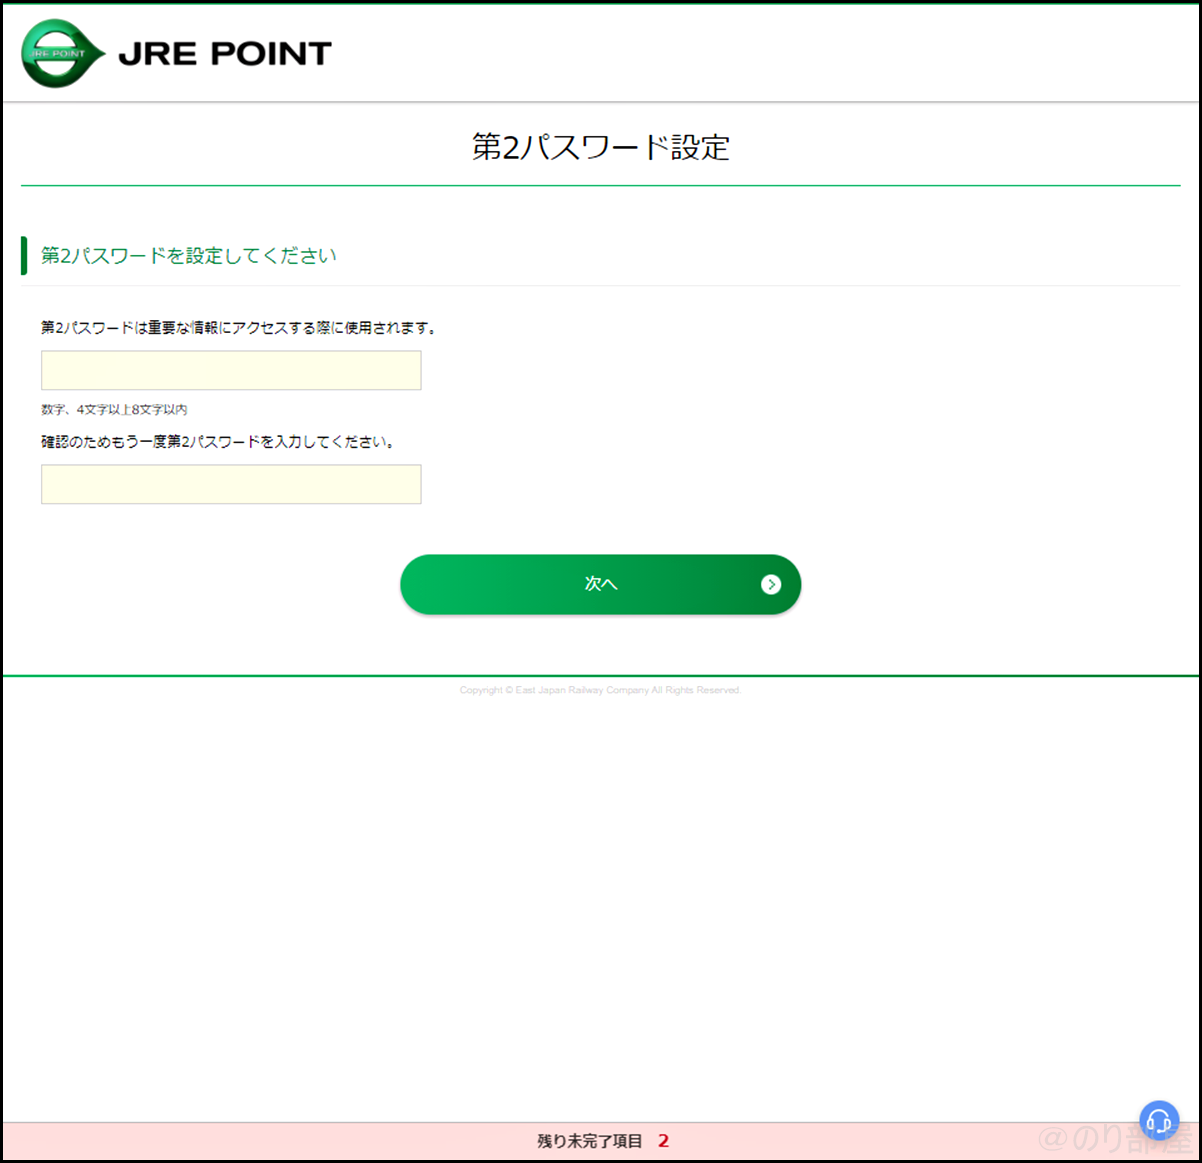 「第2パスワード設定」でJRE POINTに登録をします【徹底解説】JREポイントの登録方法｡スマホアプリでカードいらずでポイントを貯めることができます！ポイントはSuicaにチャージ！。 